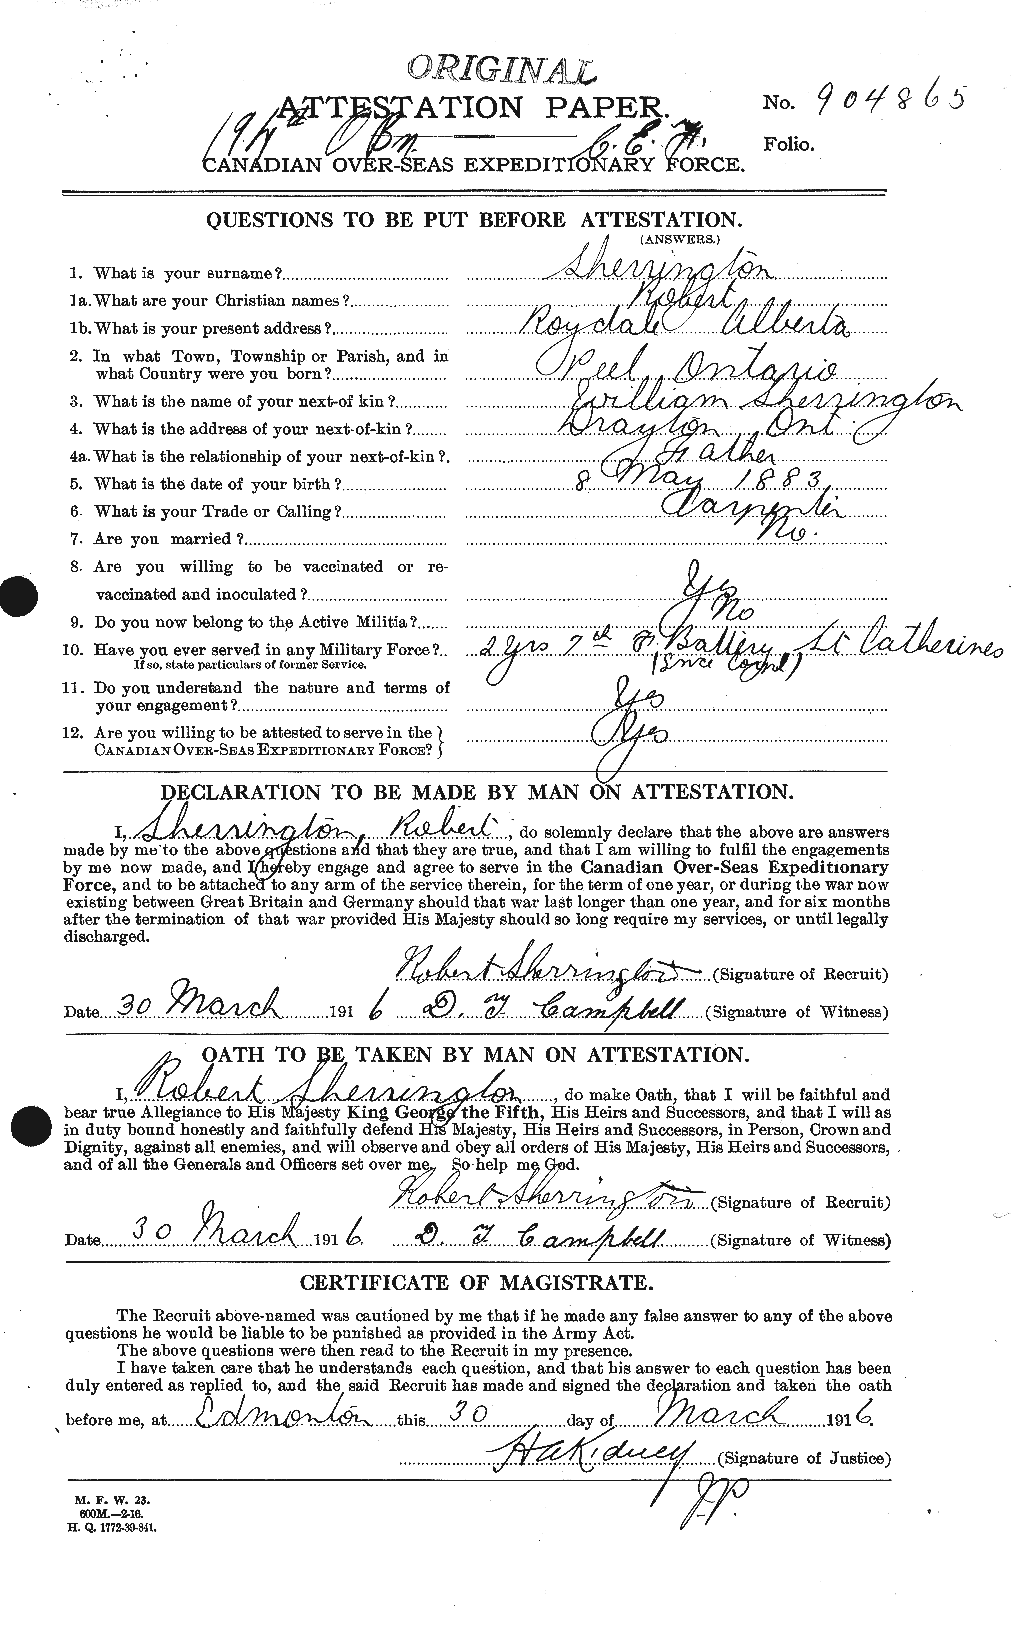 Dossiers du Personnel de la Première Guerre mondiale - CEC 092373a